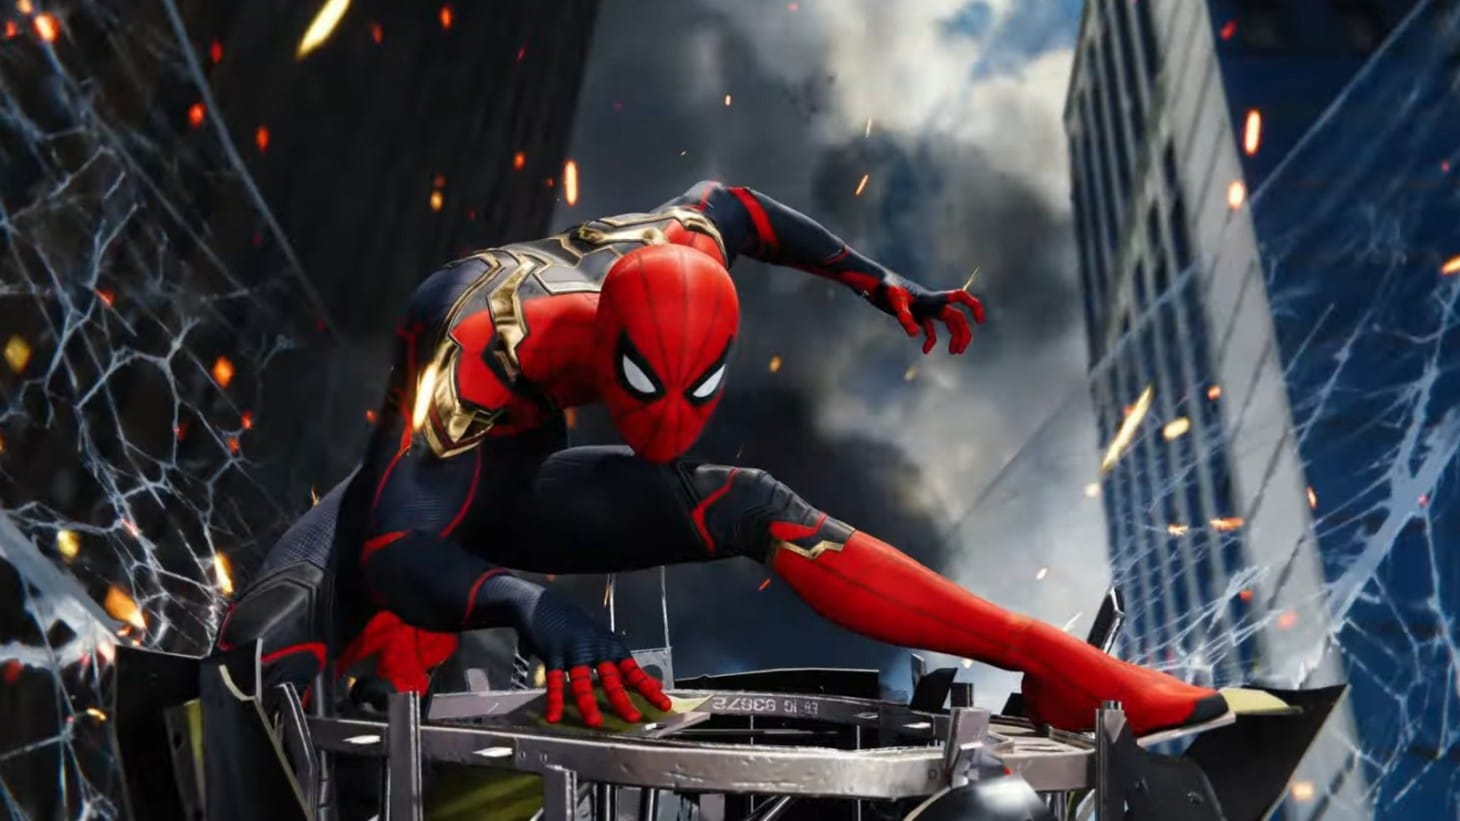 Spider-Man Remastered terá novos trajes para o Homem-Aranha!